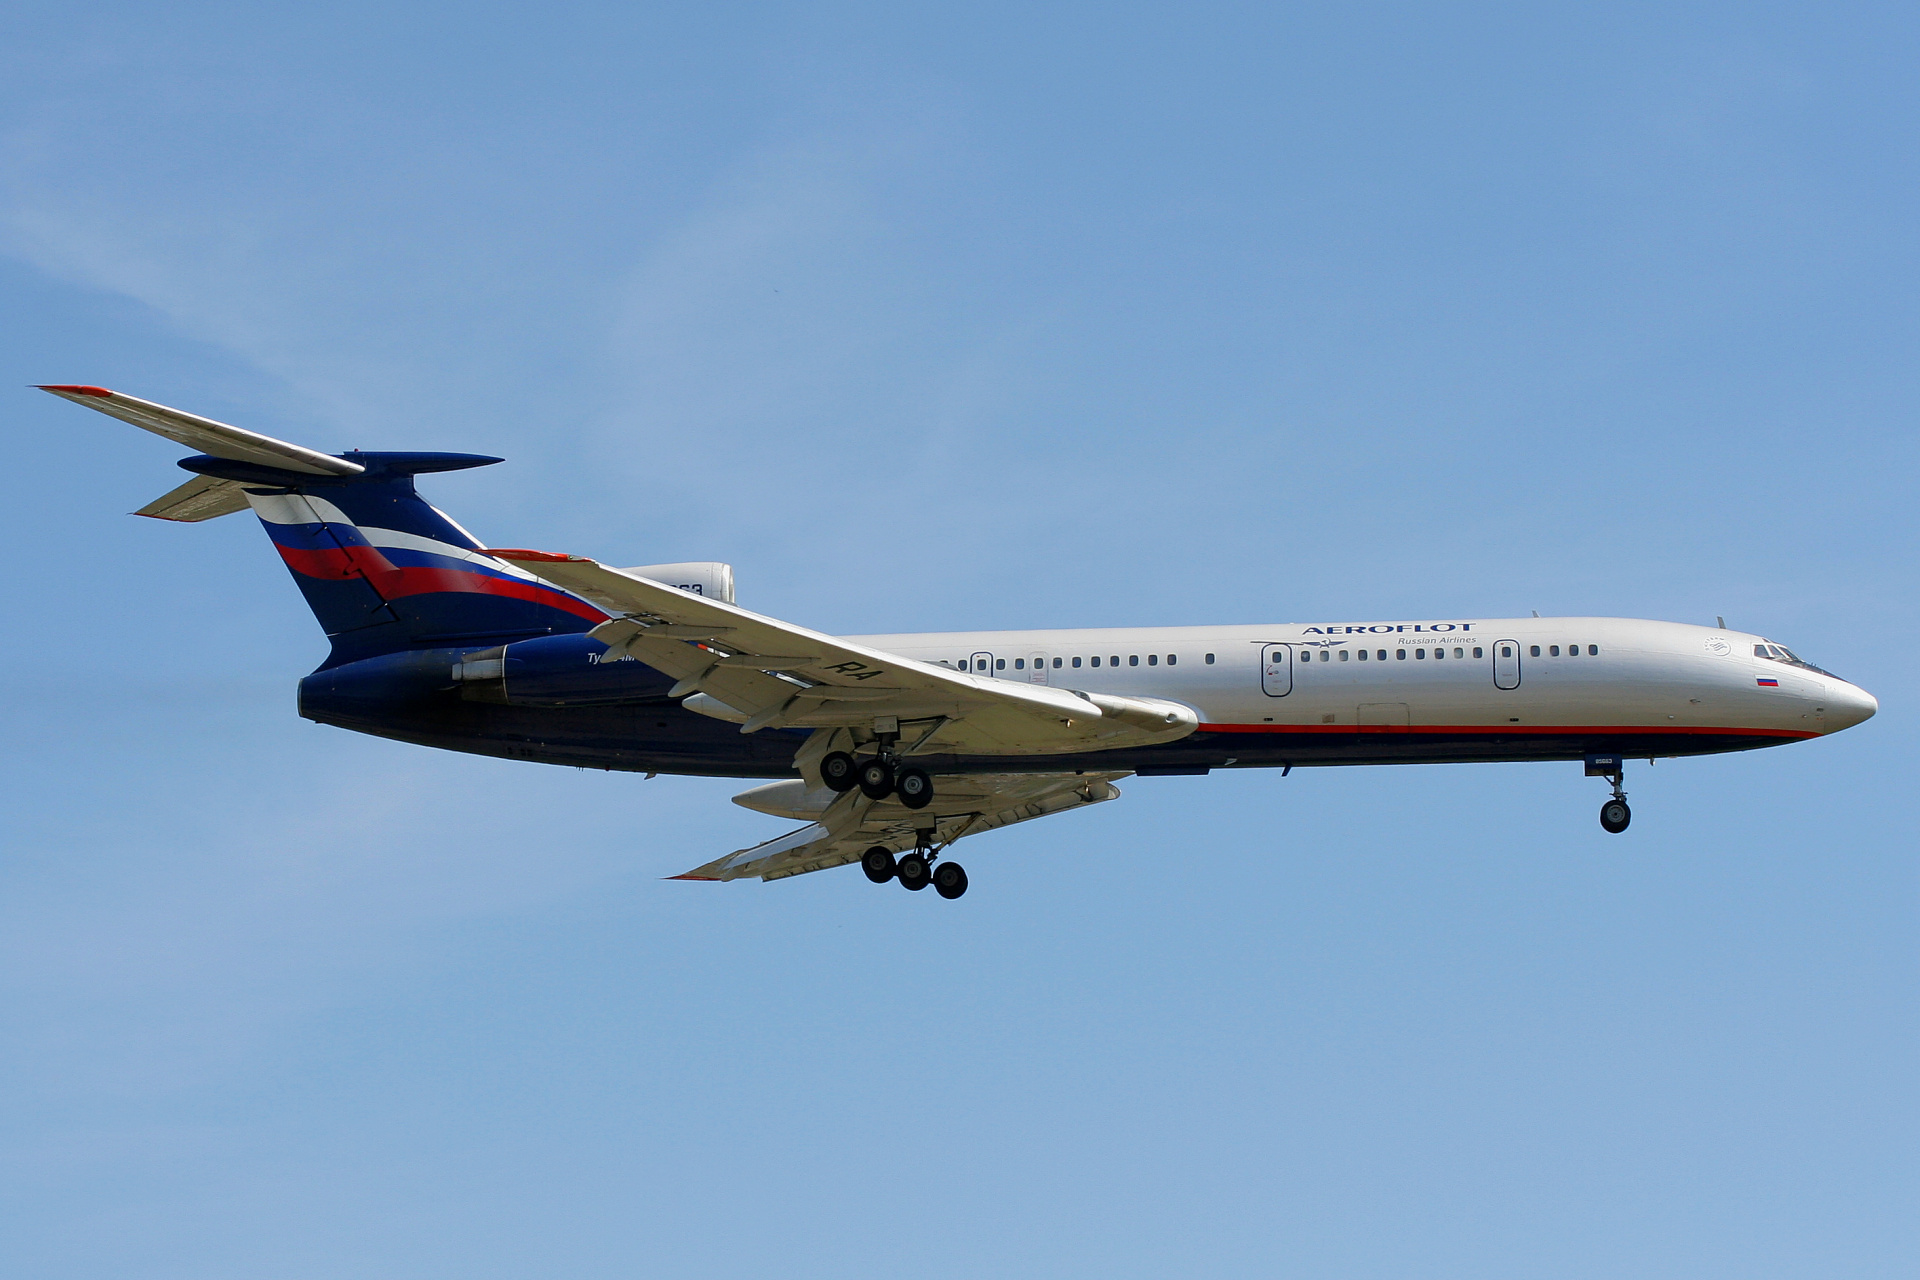 RA-85668 (Aircraft » EPWA Spotting » Tupolev Tu-154M » Aeroflot Russian Airlines)